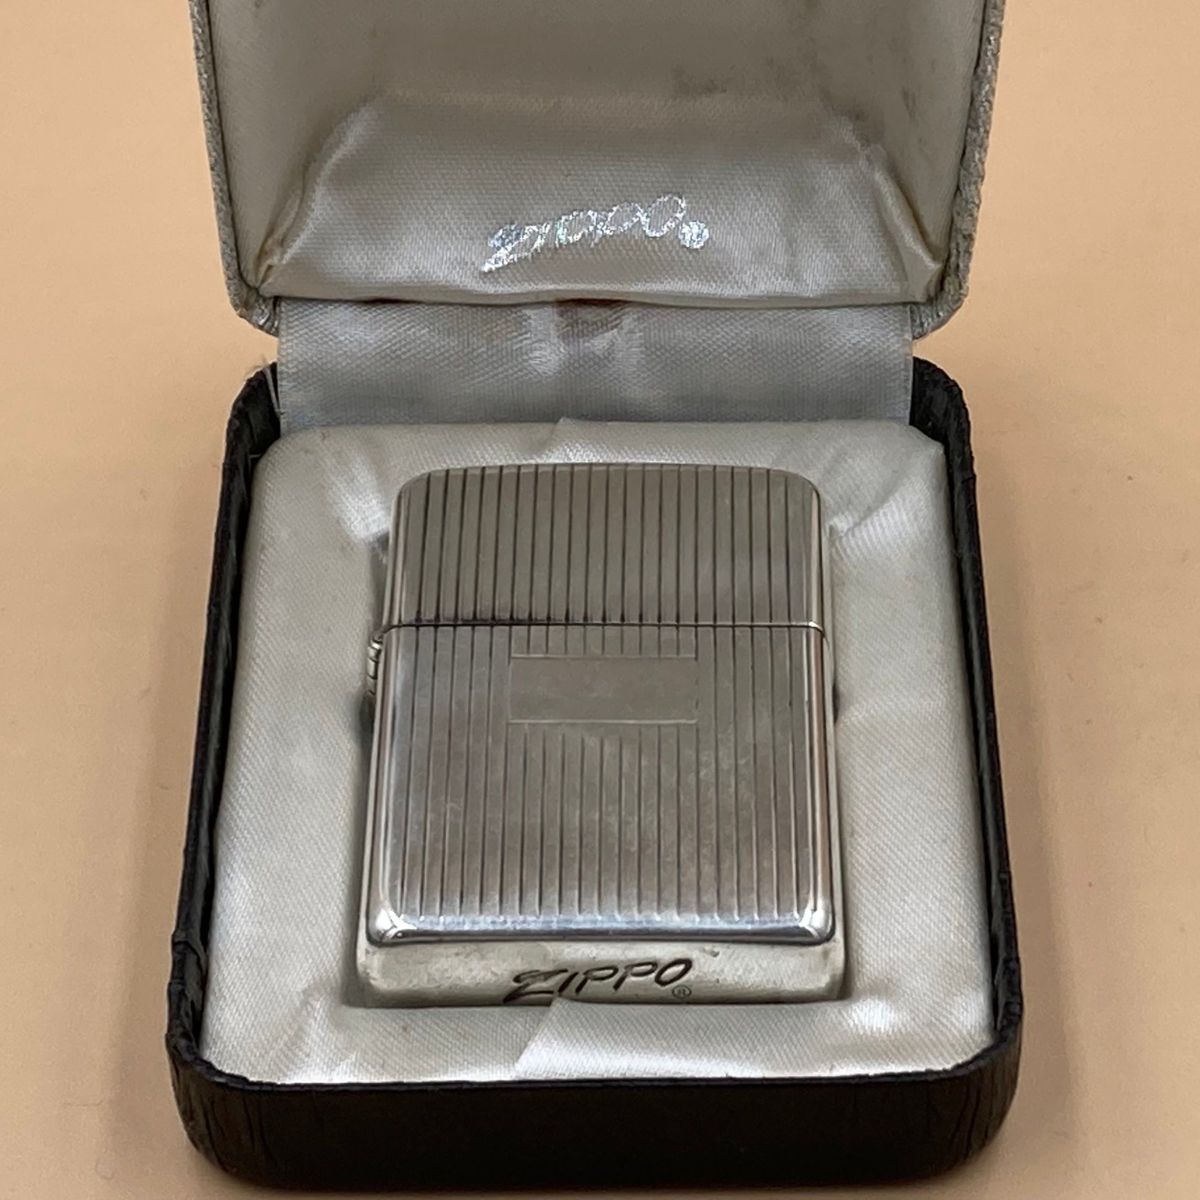 ジッポー ZIPPO ライター 使用少ない美品 1950年代 スターリングシルバー 11本線 エンジンターン オリジナルボックス【海外直輸入USED品】